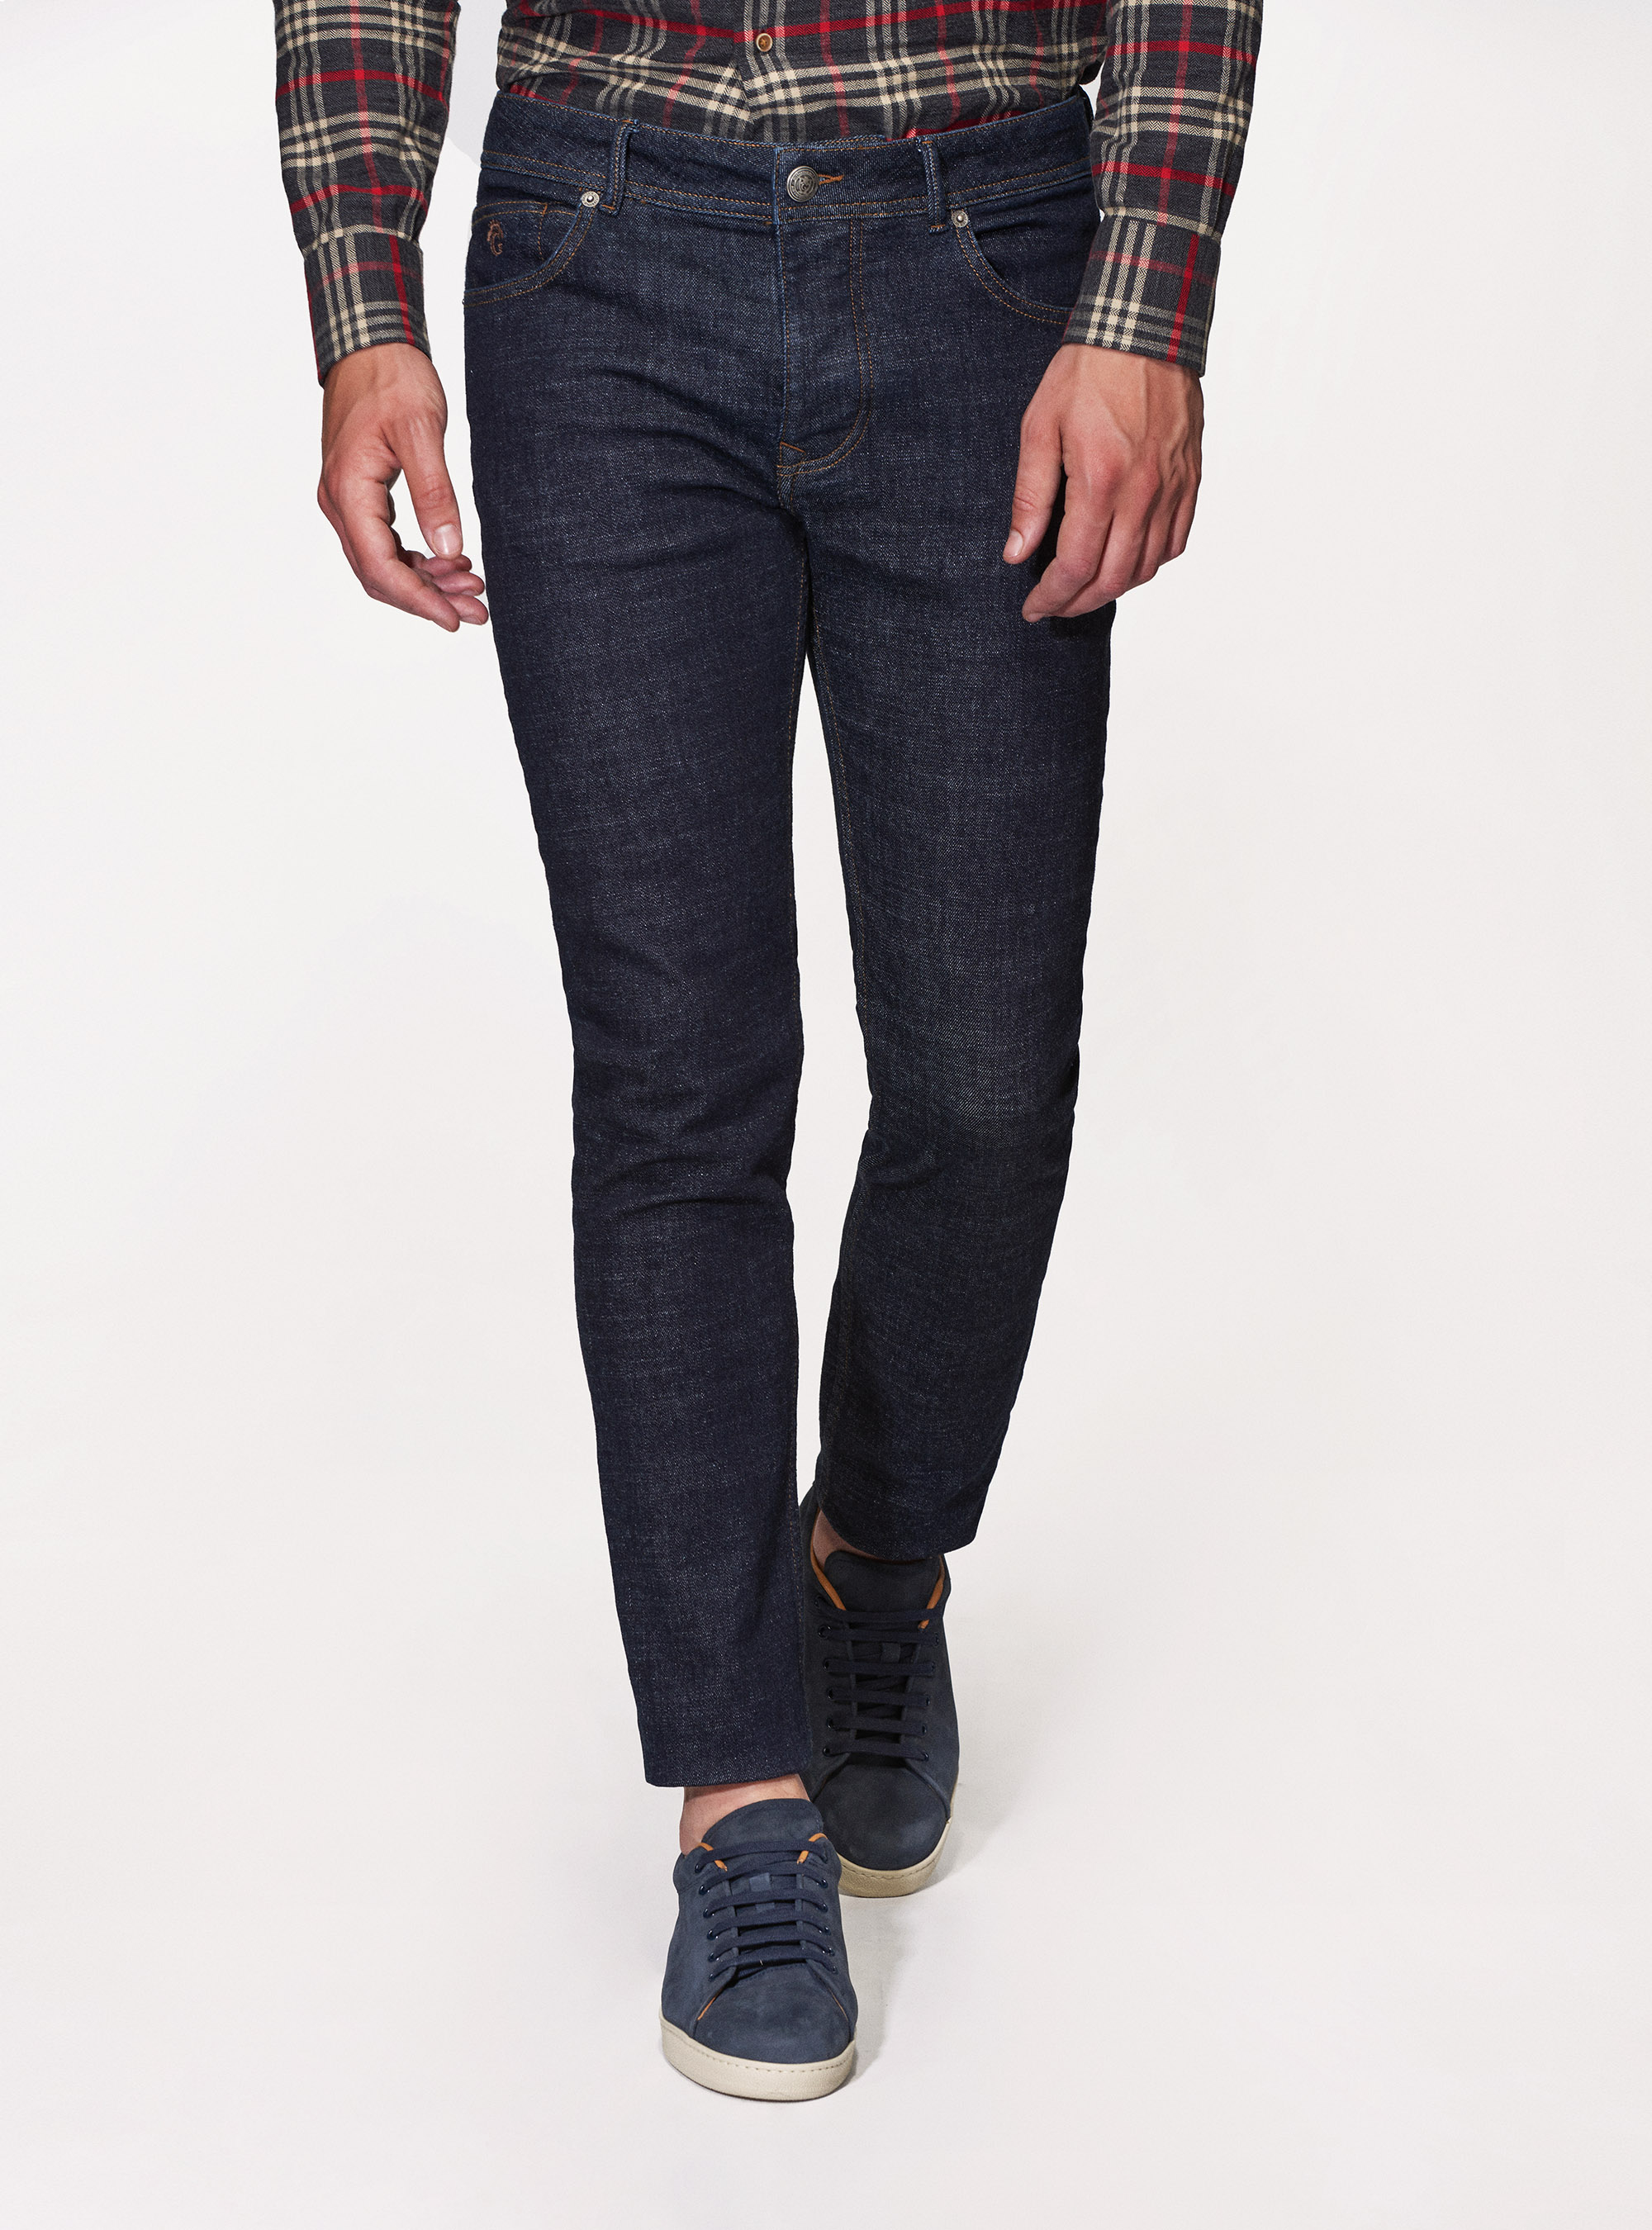 Jeans regular fit in blu navy | Gutteridge | Jeans Uomo